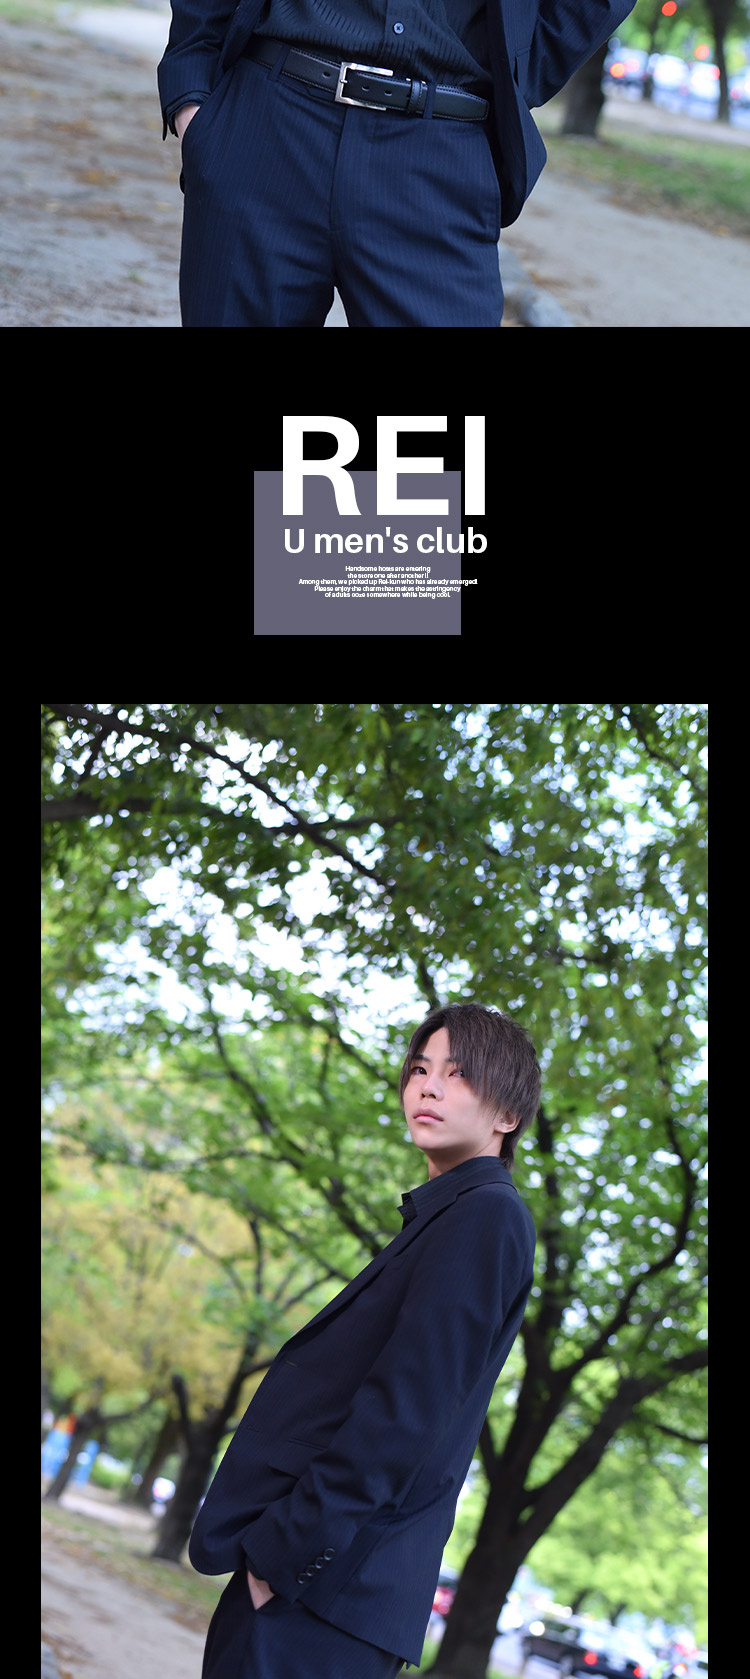 「U men's club」イケメン紹介第三弾!!